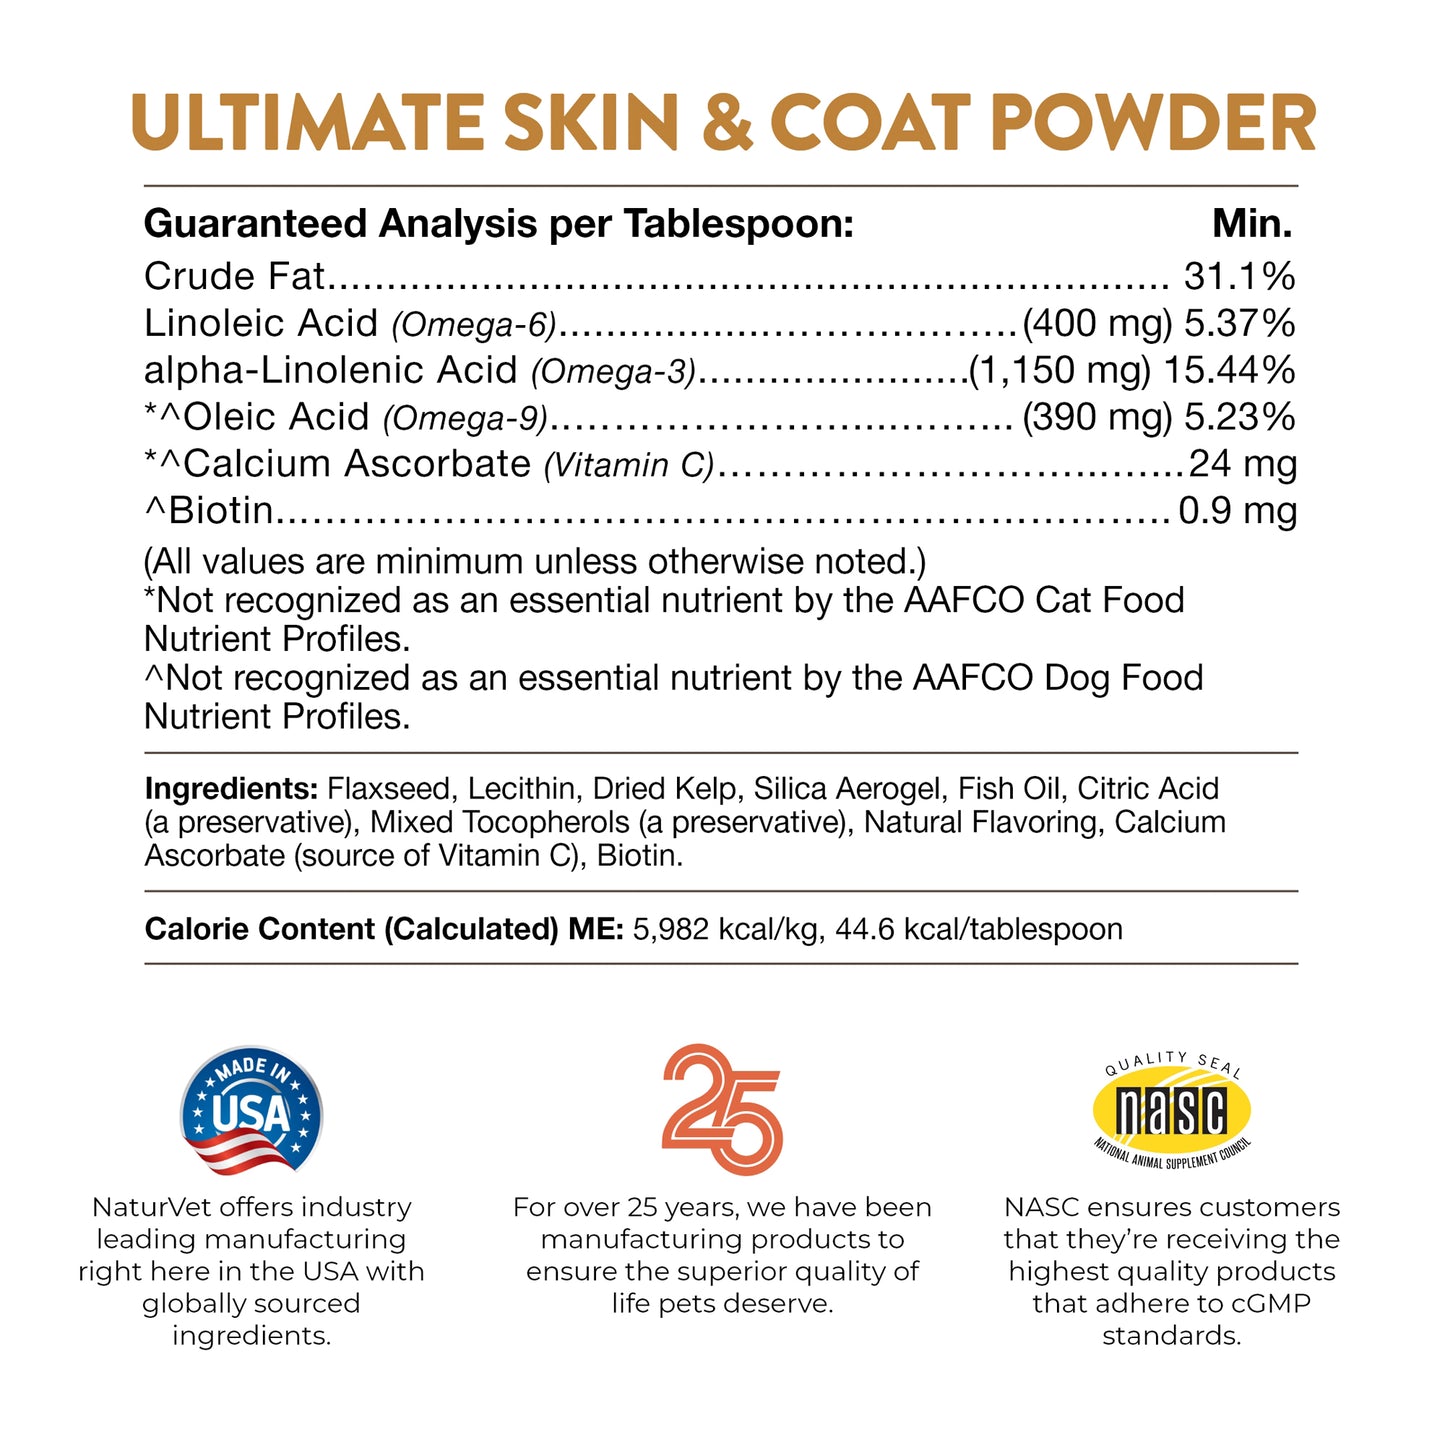 Ultimate Skin & Coat Powder